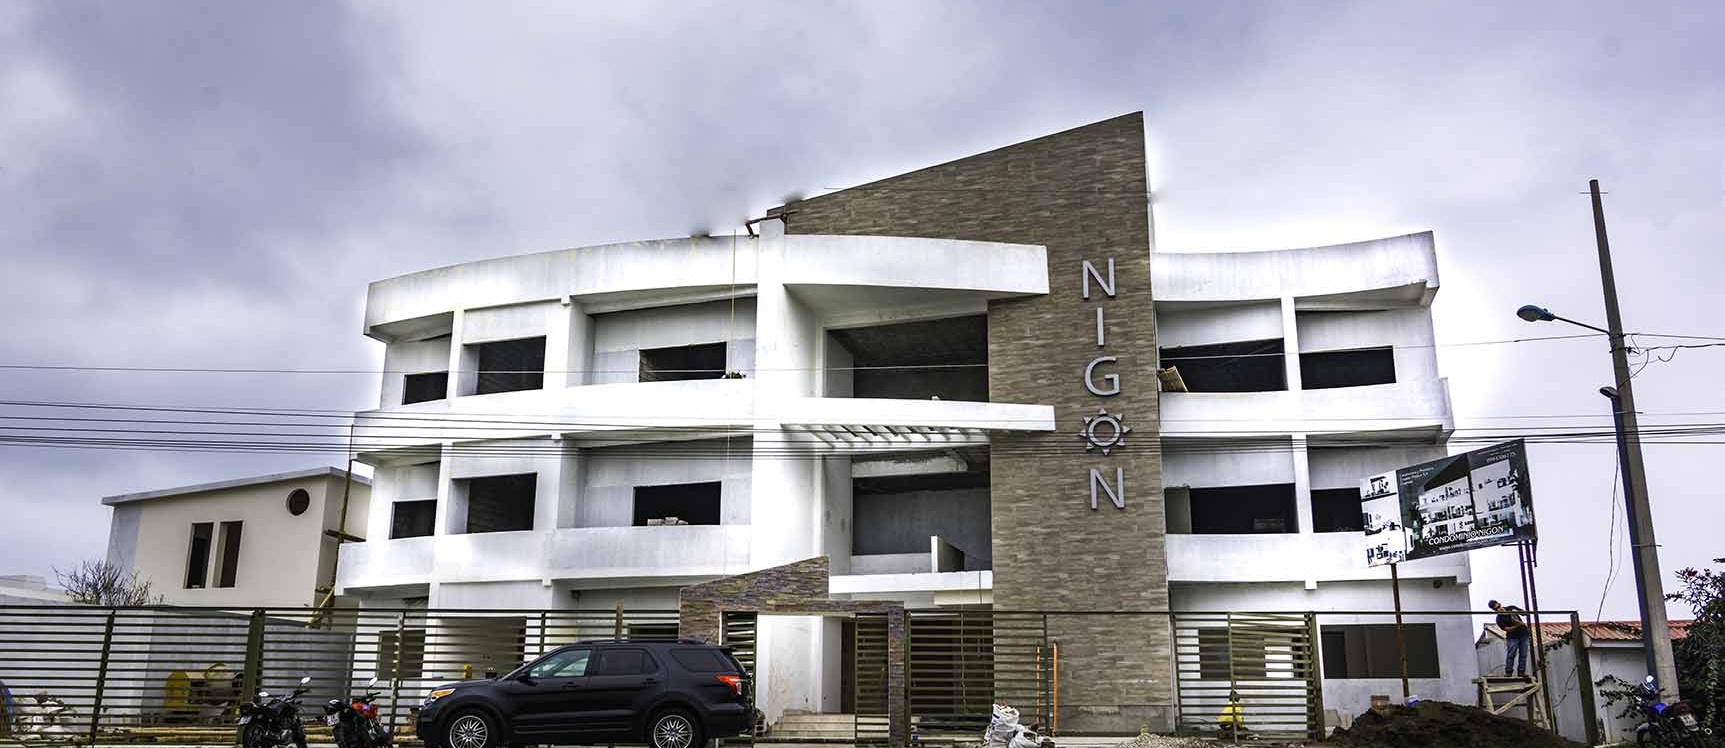 GeoBienes - Departamento en venta frente al mar condominio Nigon Capaes - Santa Elena - Plusvalia Guayaquil Casas de venta y alquiler Inmobiliaria Ecuador